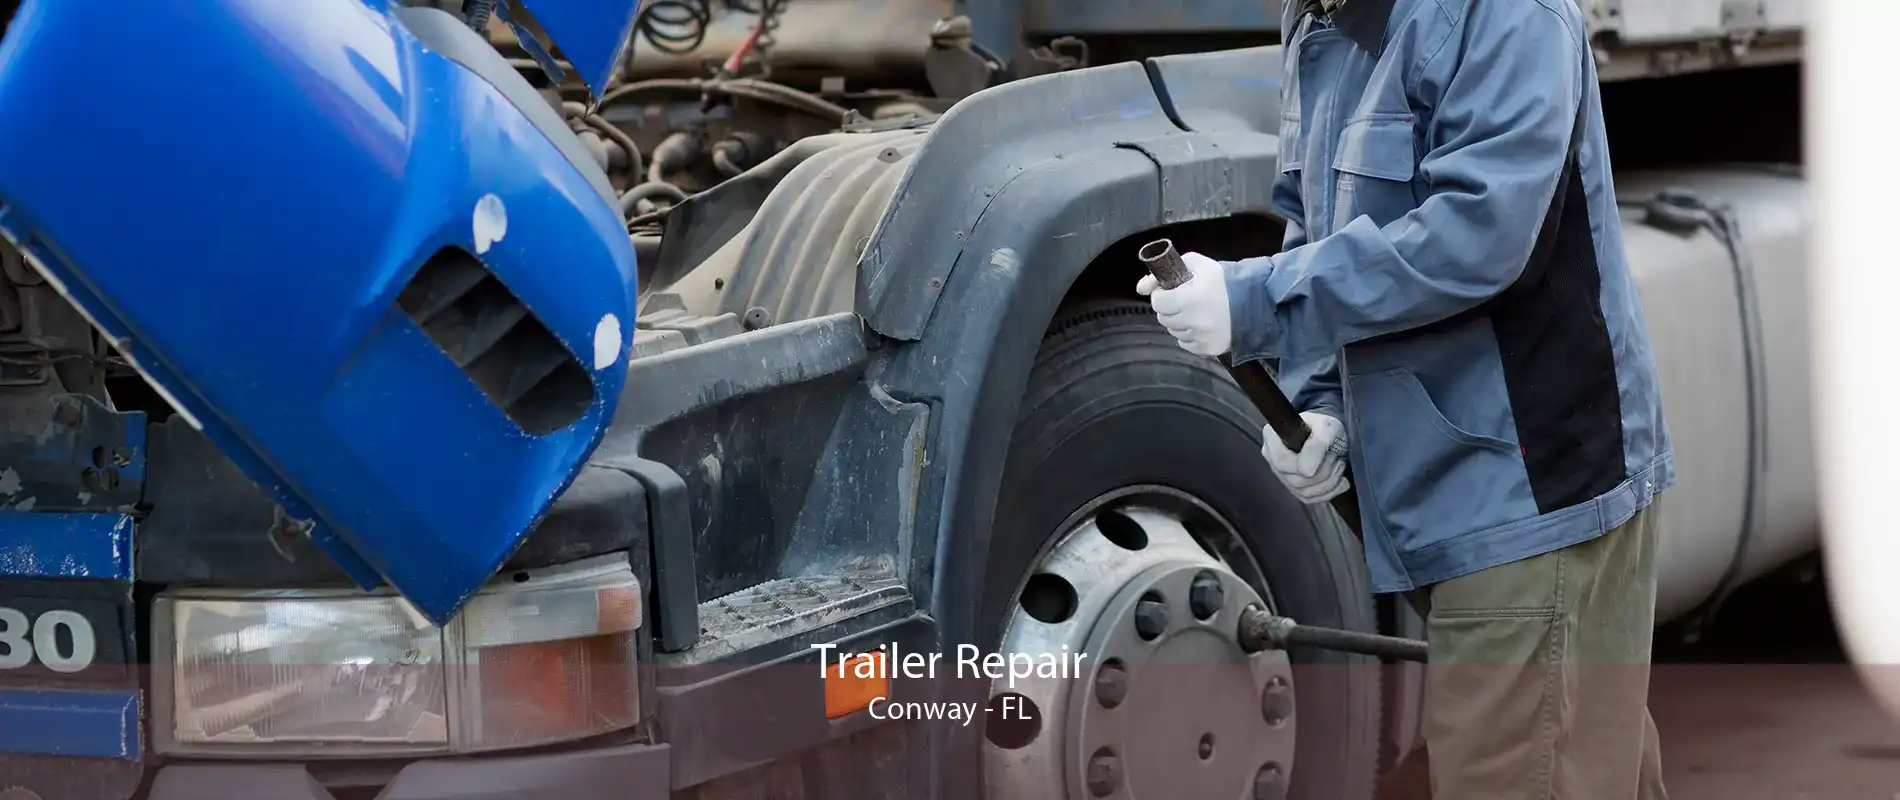 Trailer Repair Conway - FL